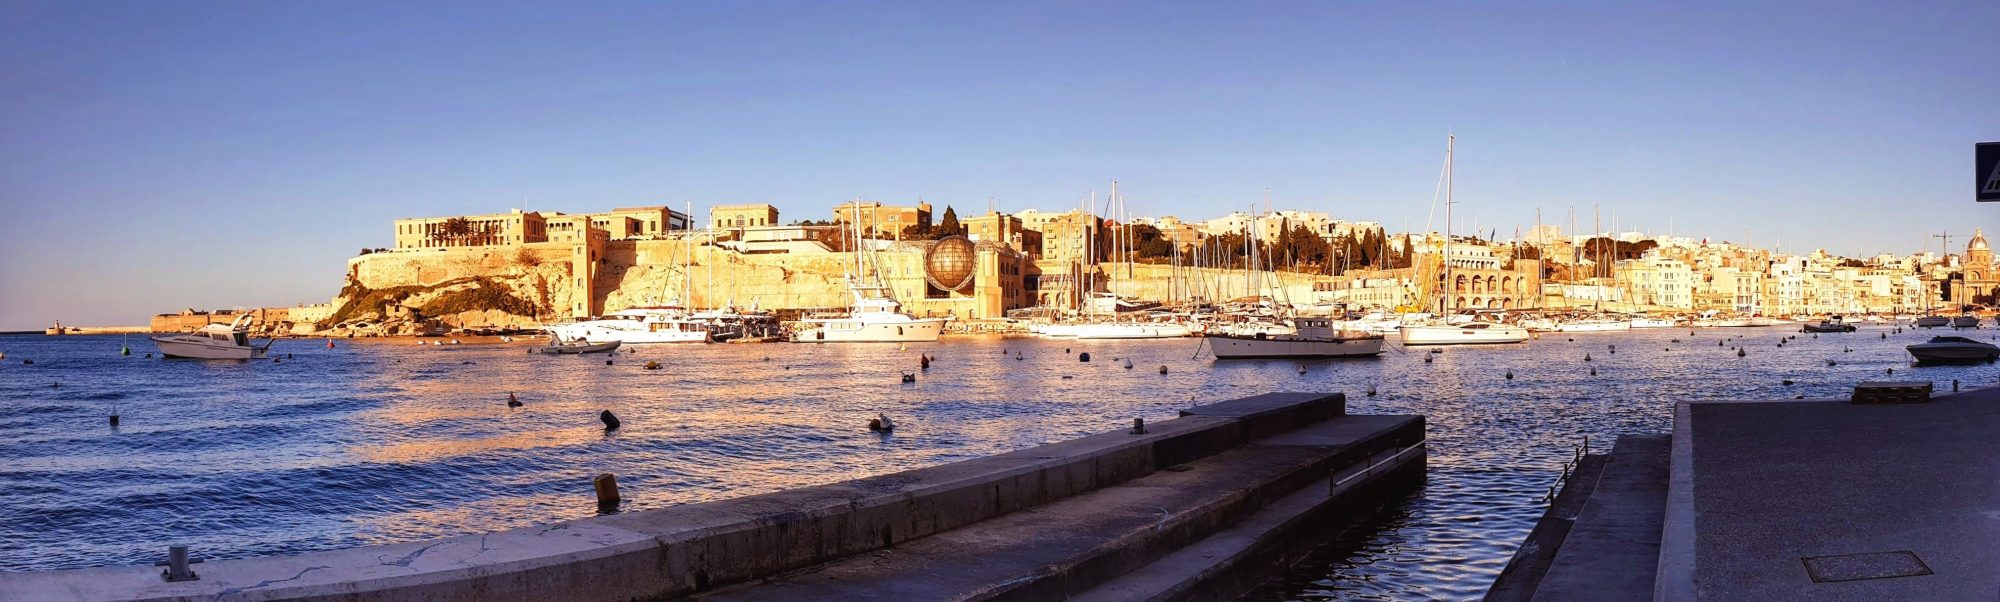 Maltan pieniä kaupunkeja banner